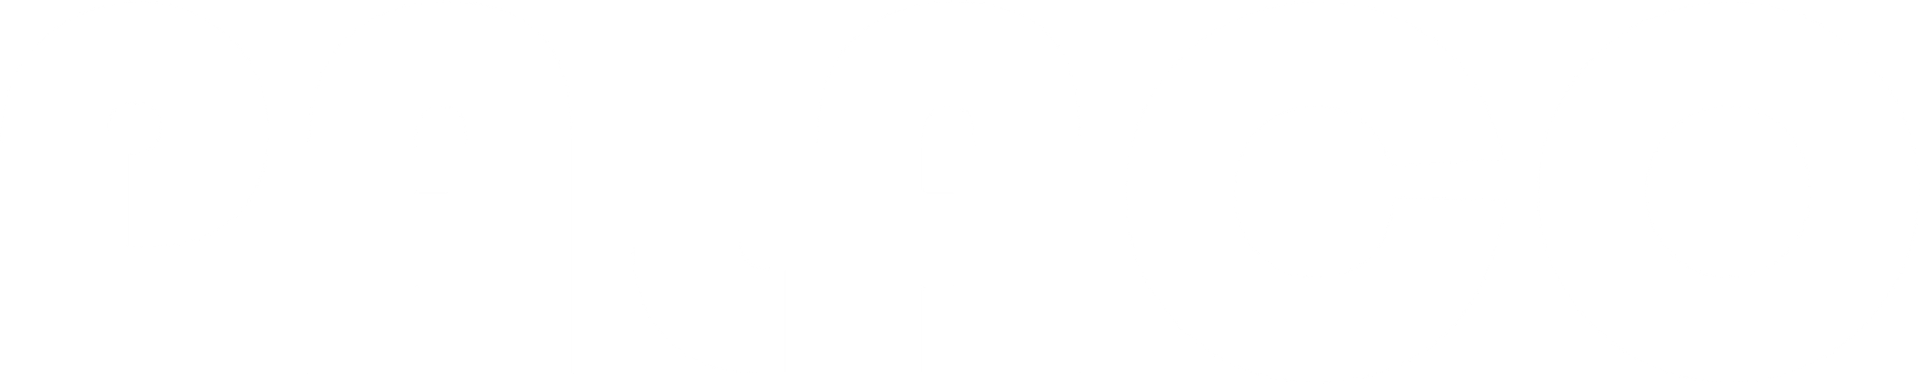 logo Palaco